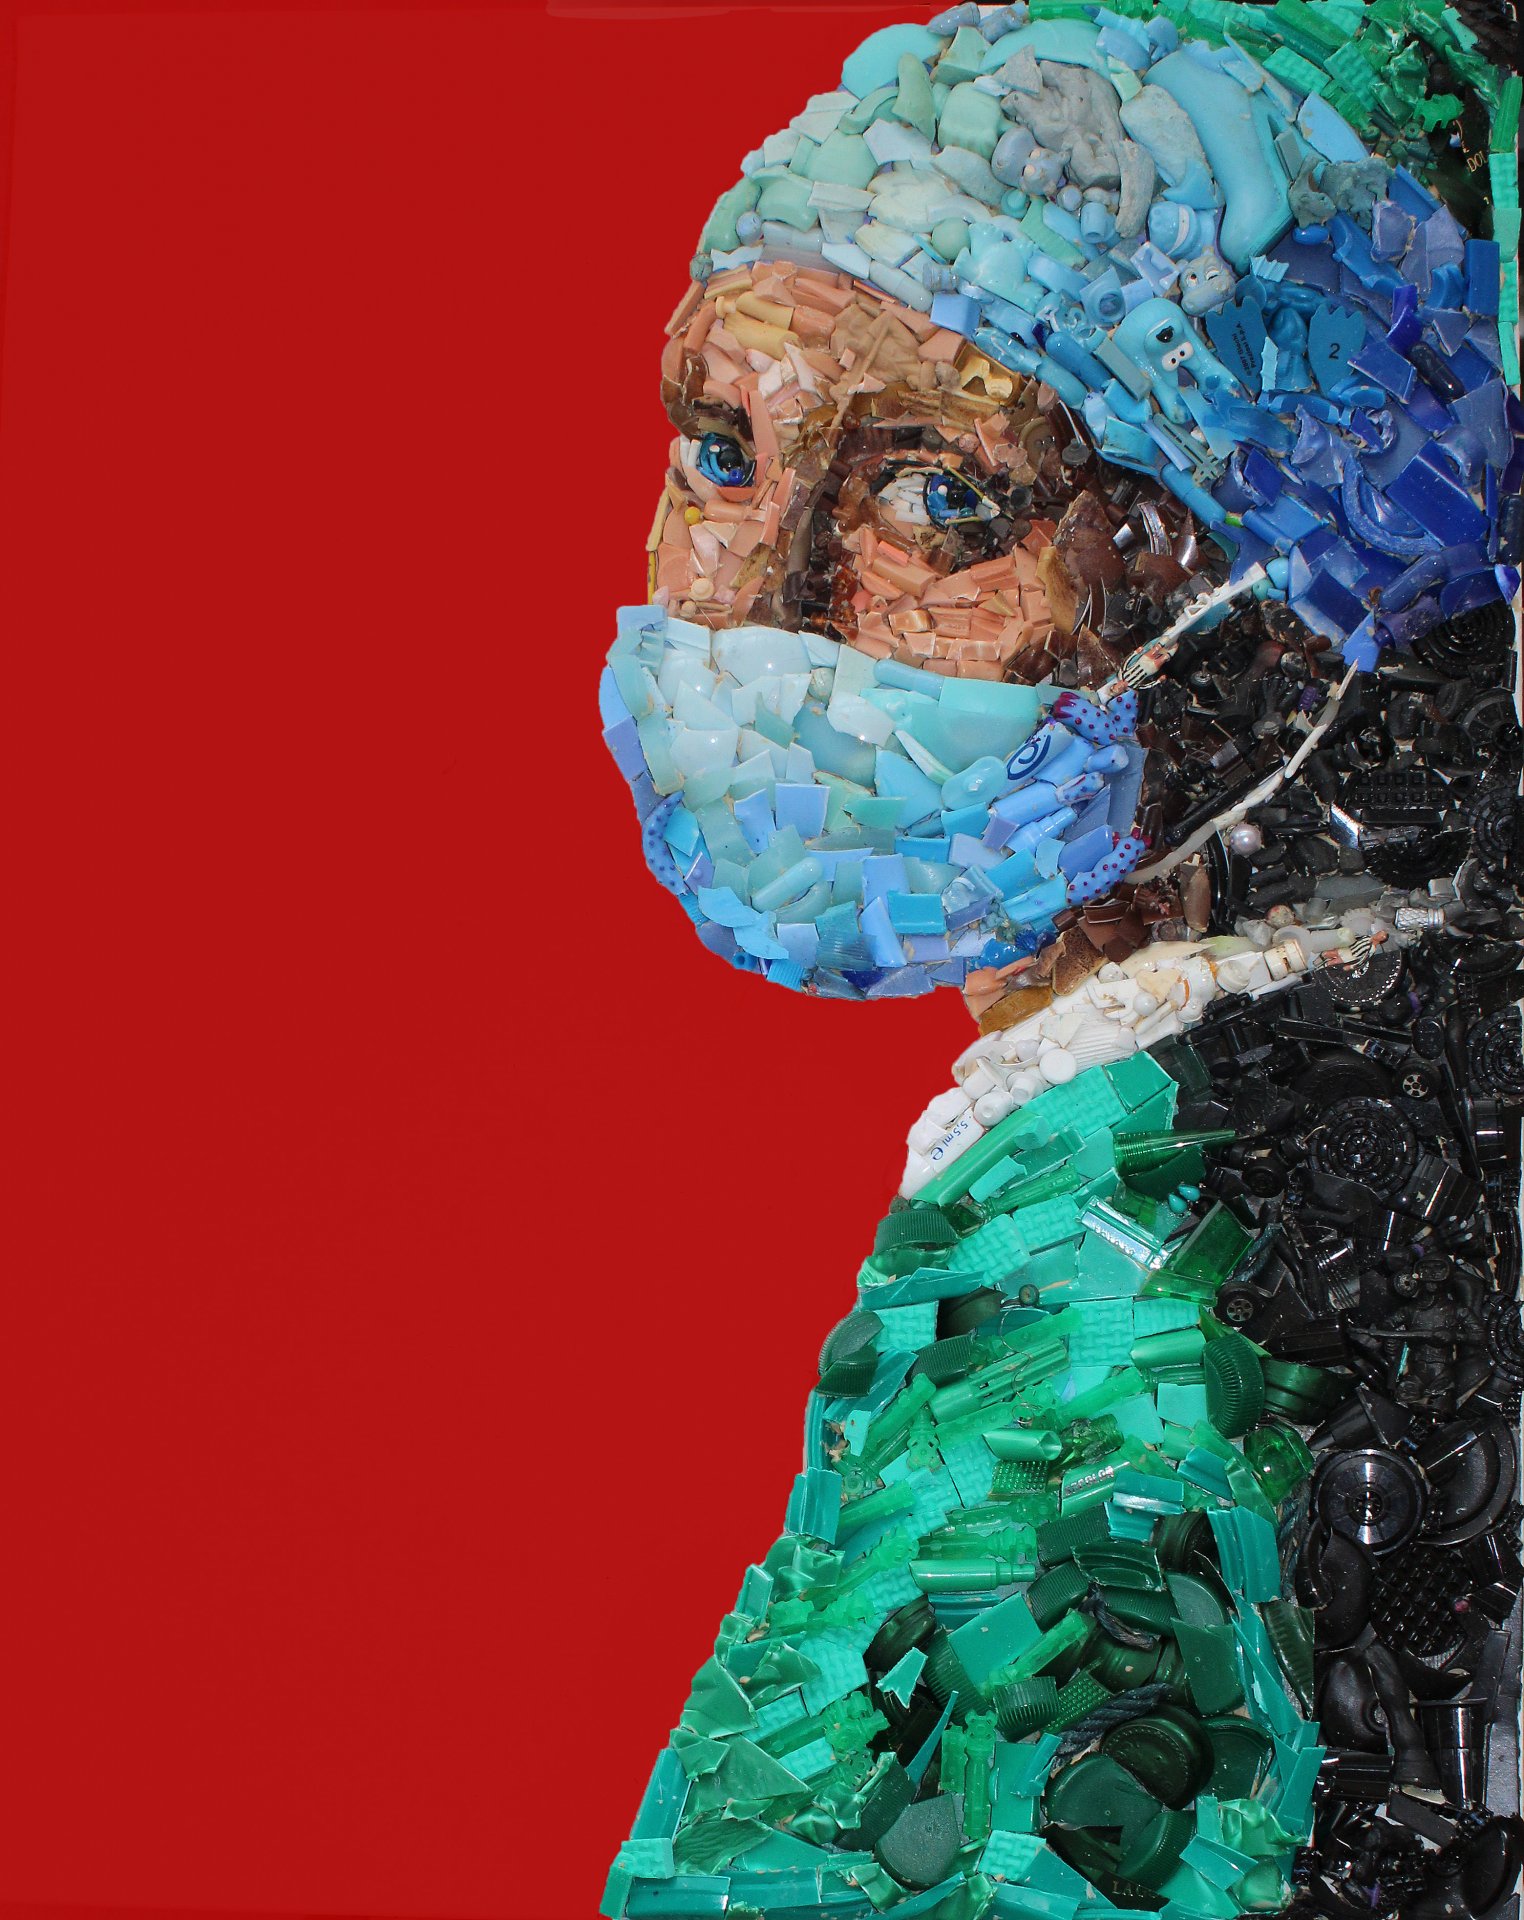 L'infermiera con l'orecchino di perla, 2020, oggetti e resina su tavola, 40 x 50 cm